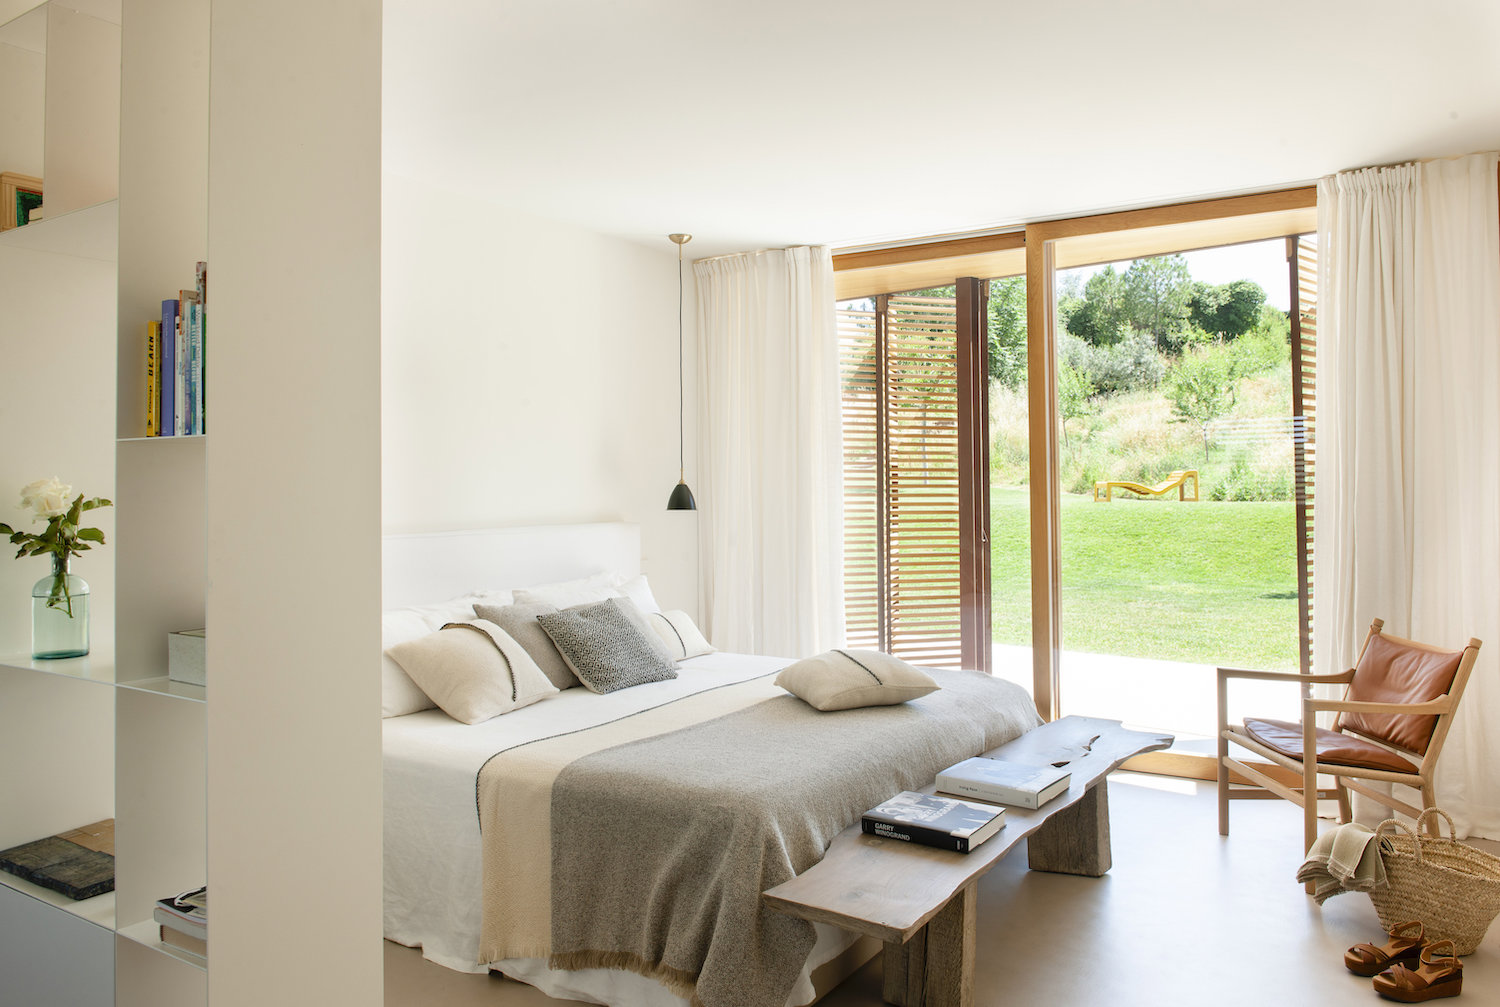 Dormitorio con ropa de cama natural, banco de madera y ventana abierta al jardín